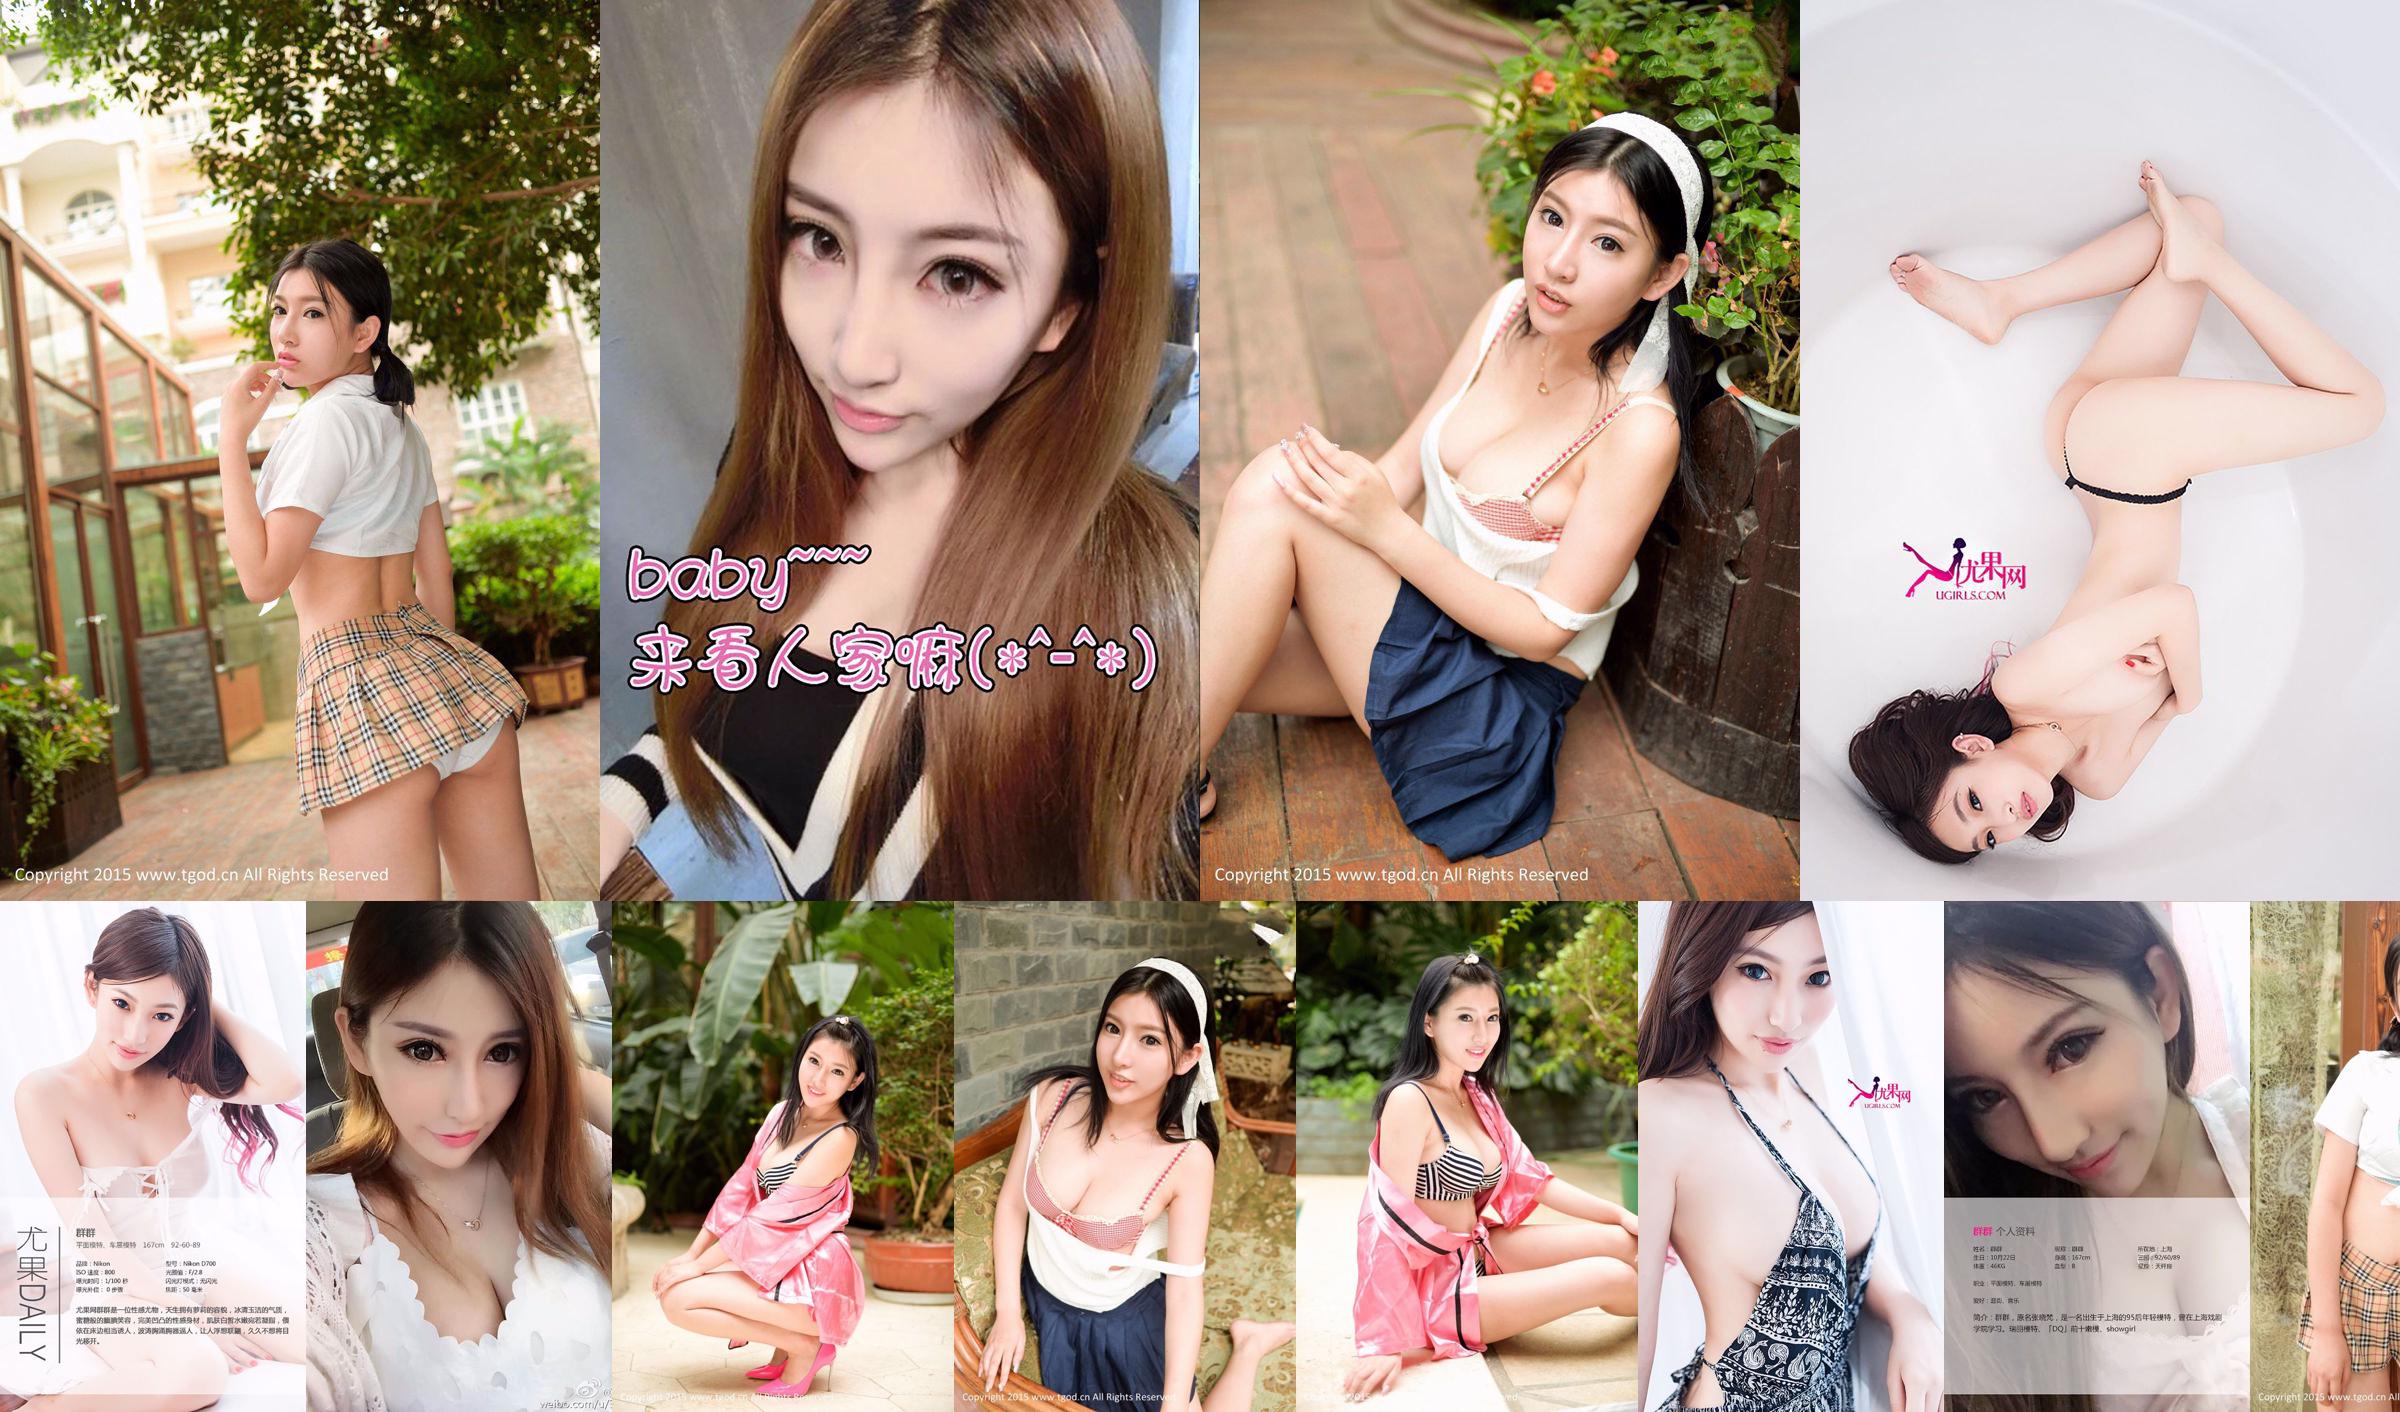 Zhang Xiaofan (Group) "Charming Smile, Honey Loli" [Love Ugirls] No.144 No.8ba67a Page 2